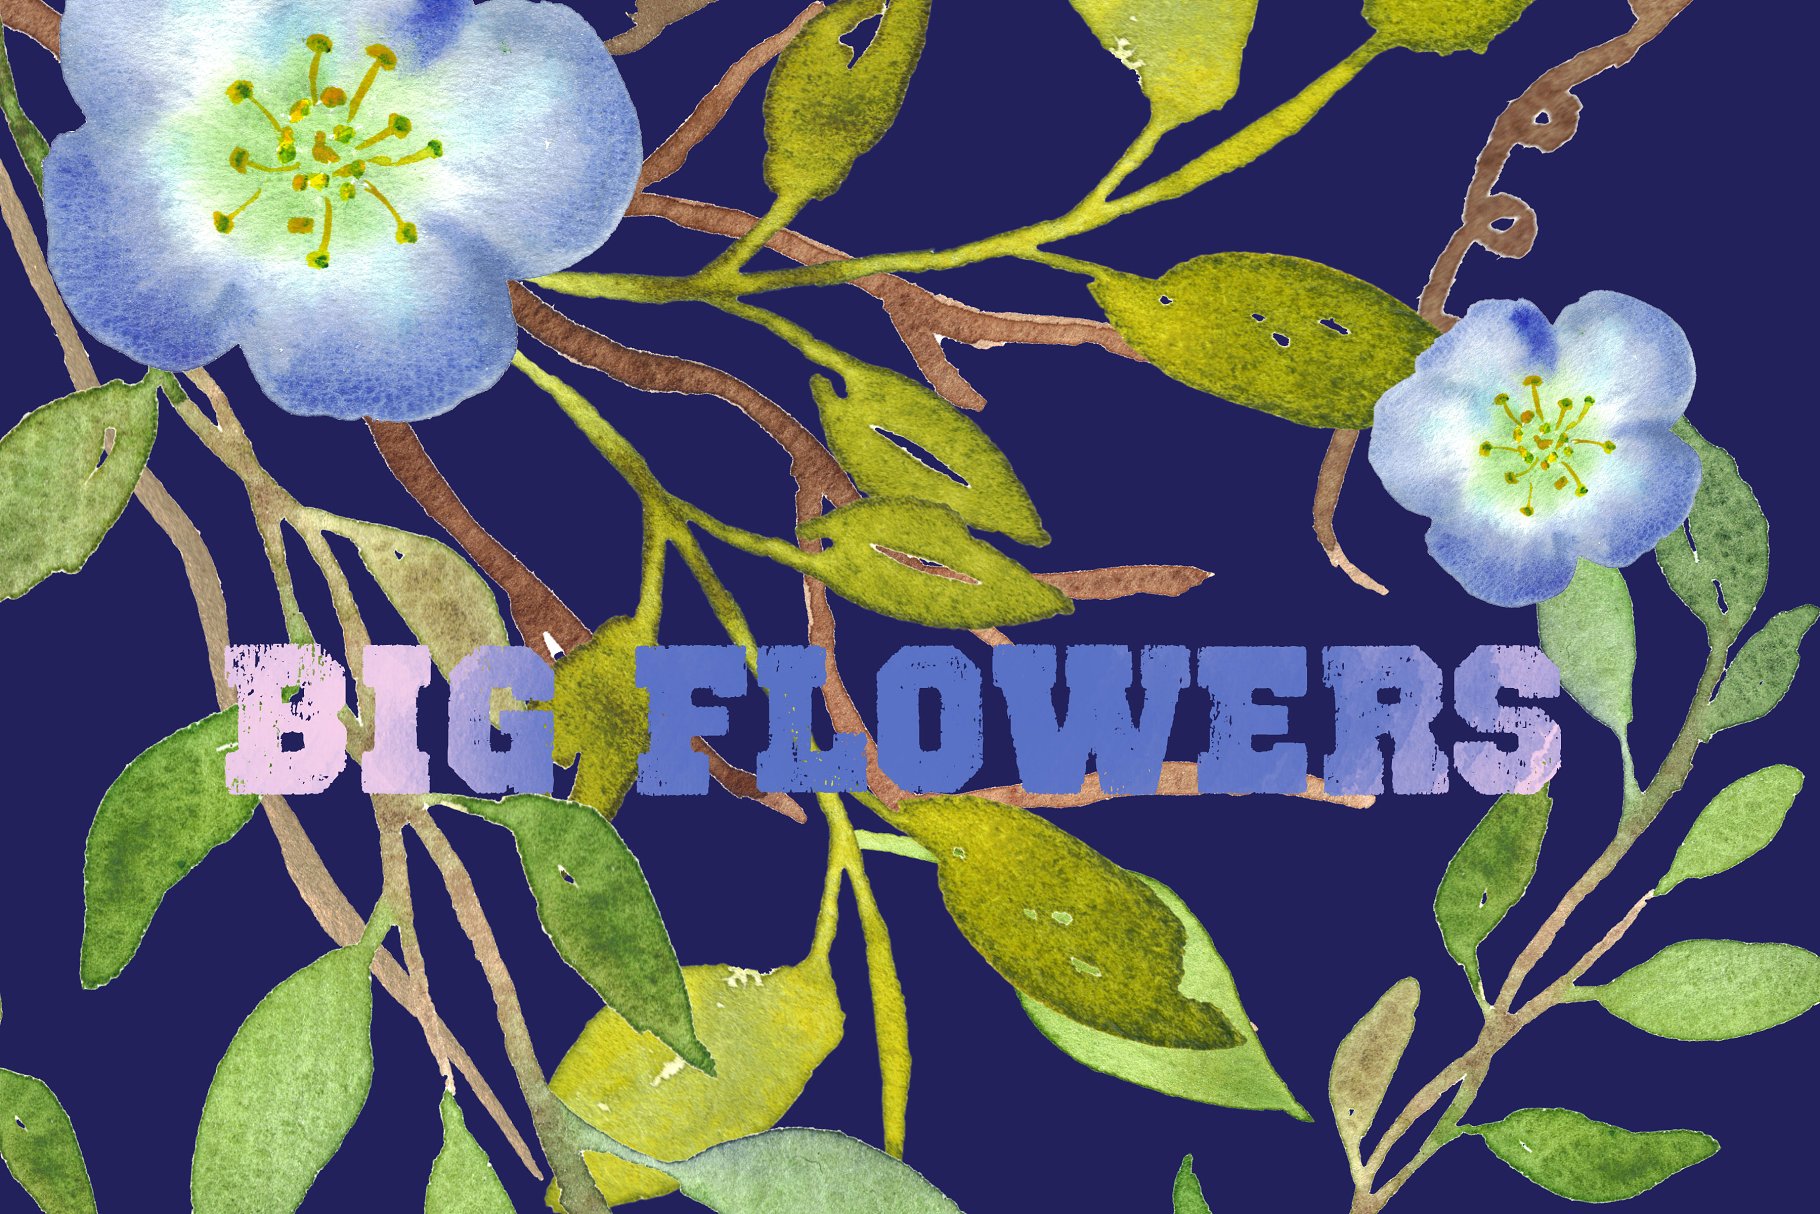 水彩手绘花卉艺术剪贴画设计素材 Big Flowers watercolor clipart插图(2)